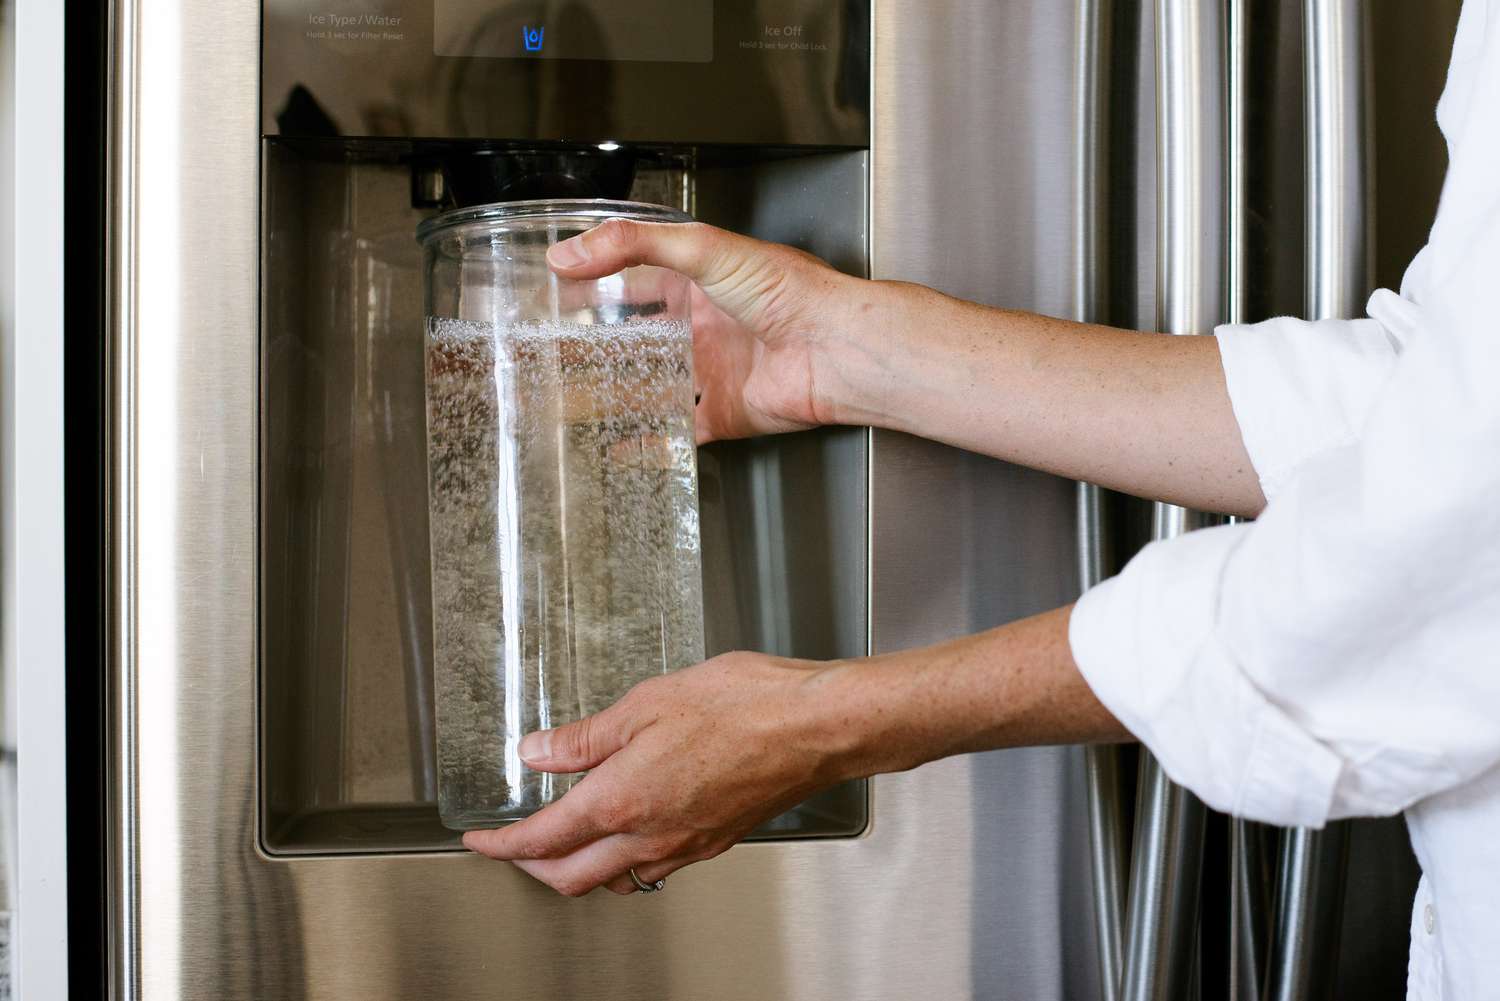 Filtro de agua nuevo en el frigorífico siendo enjuagado en una jarra separada